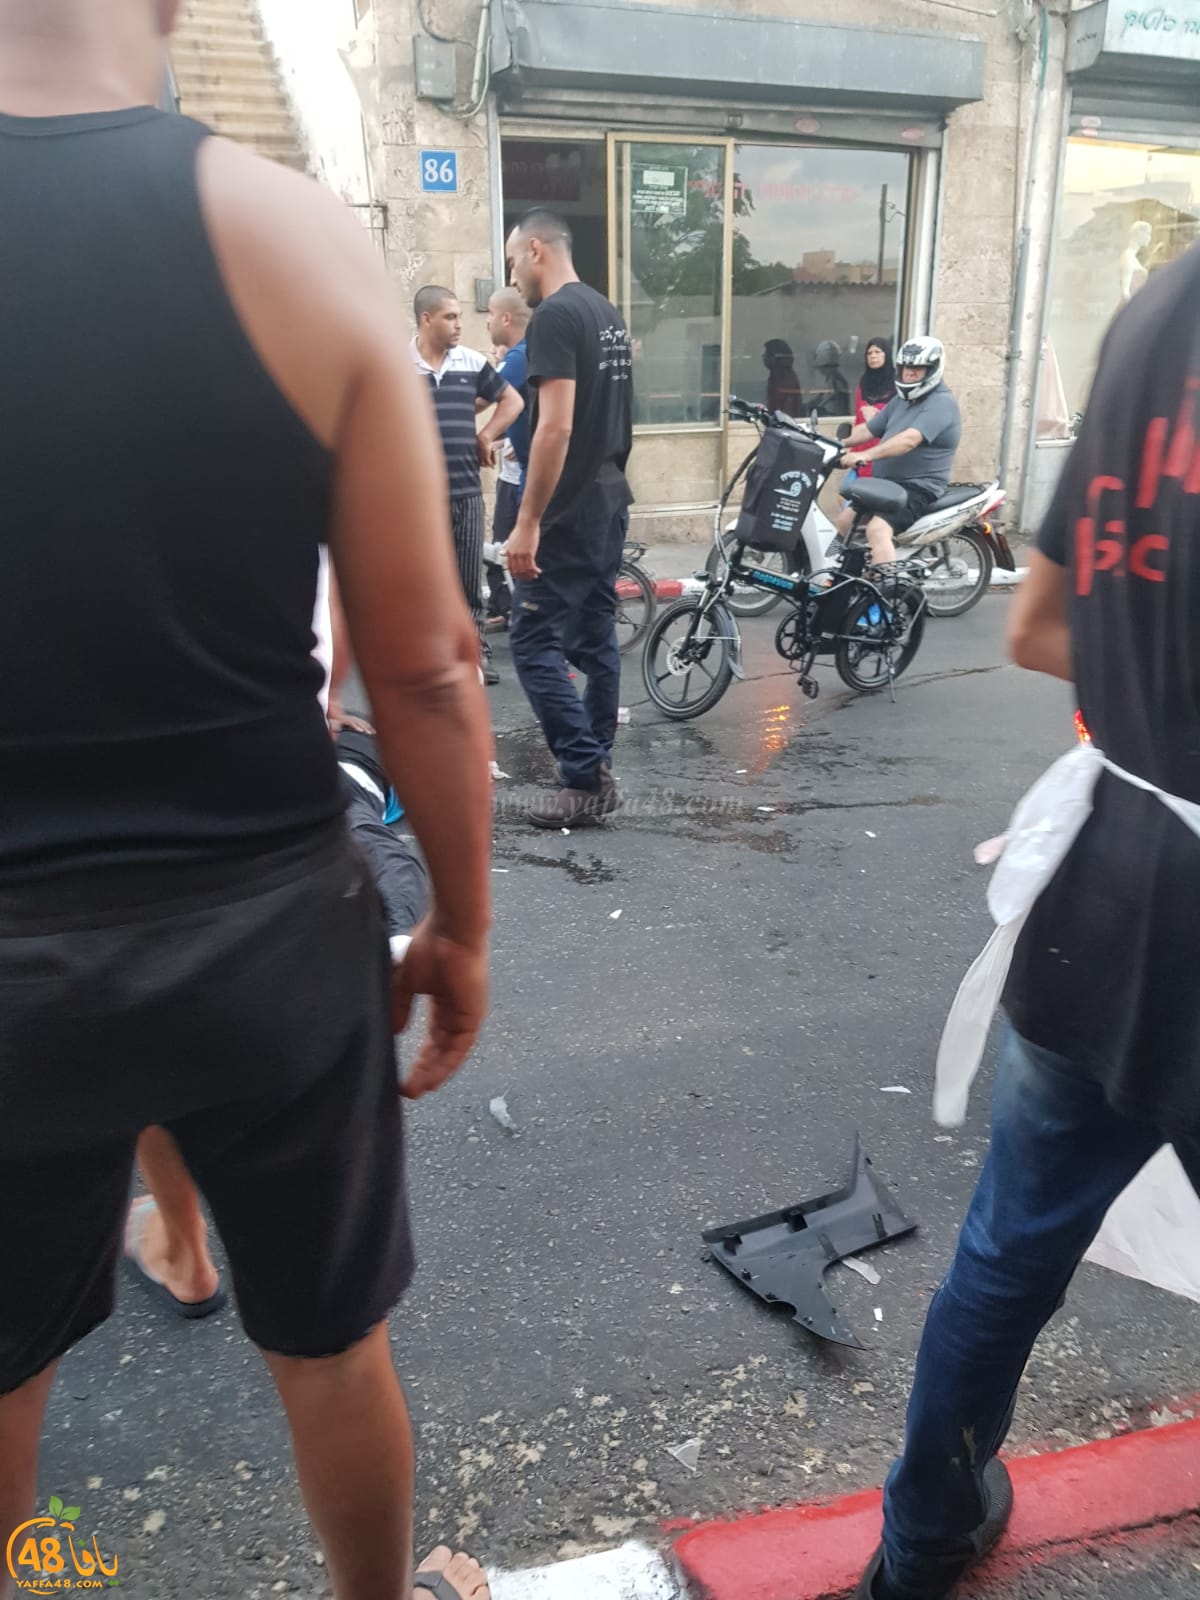 فيديو: اصابة 3 أشخاص بحادث طرق مروّع في مدينة يافا 